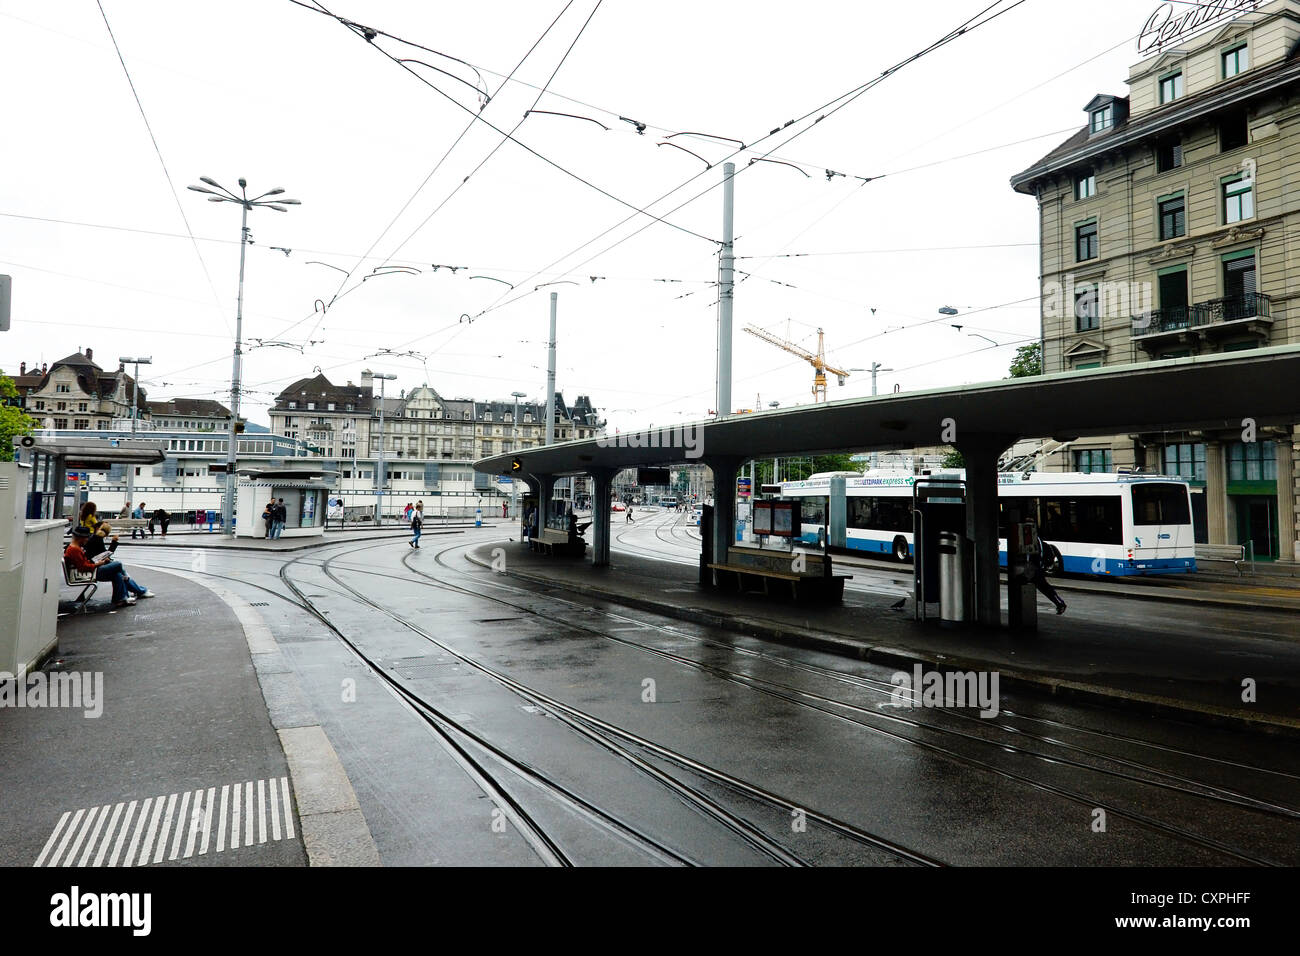 Menschen bei einer Straßenbahn halt in Zürich. Dies war eine ziemlich große Straßenbahnhaltestelle, aber gab es nur wenige Menschen auf, da es nur geregnet hatte. Stockfoto